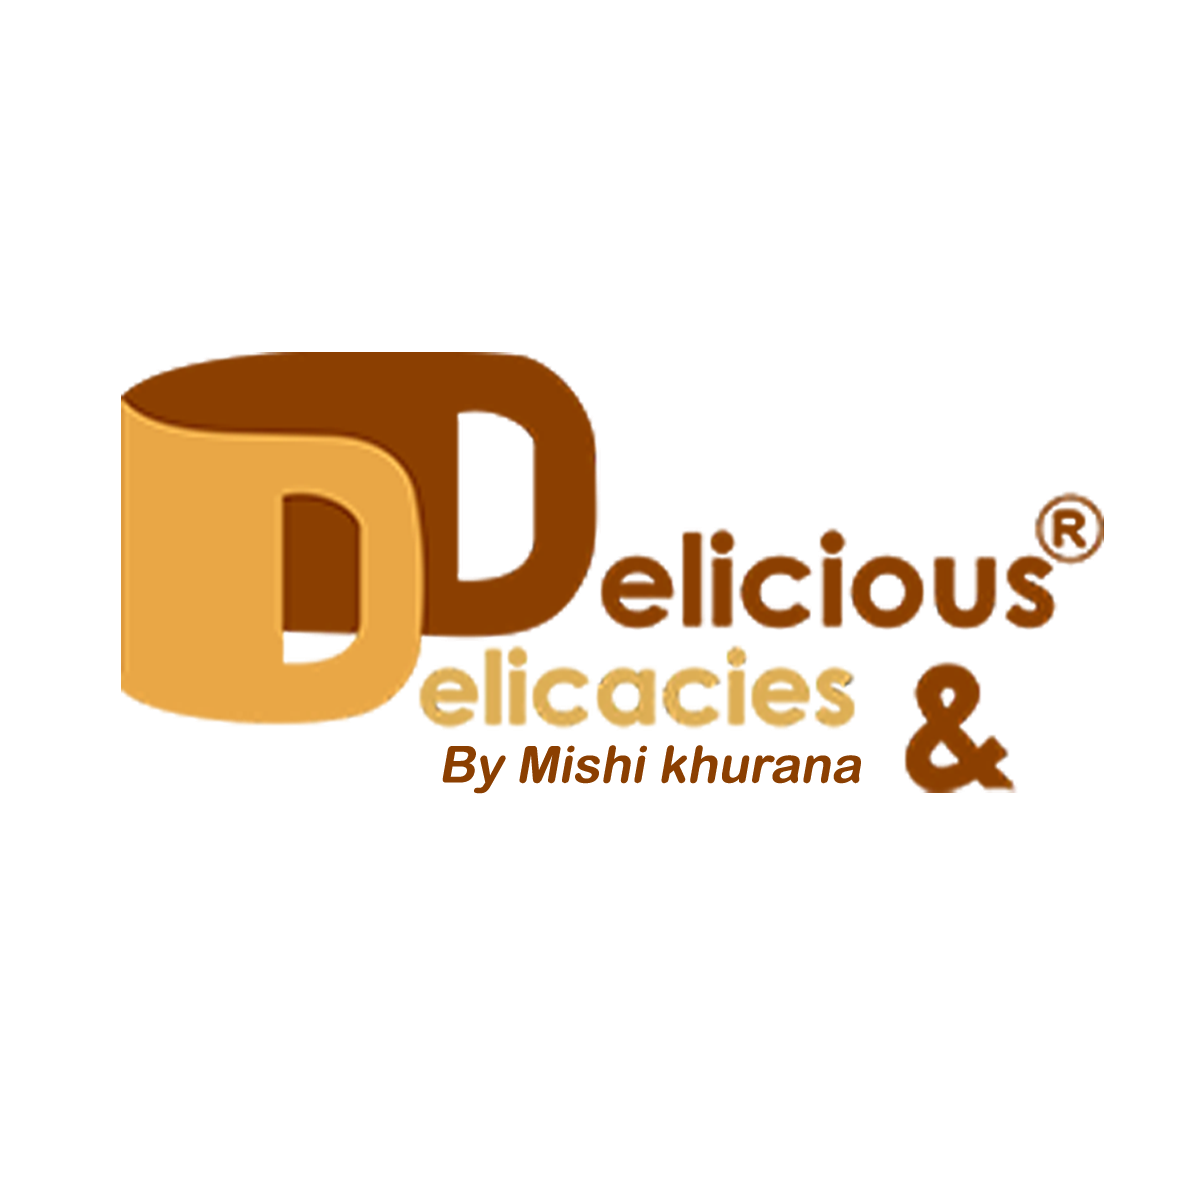 Delicious & Delicacies